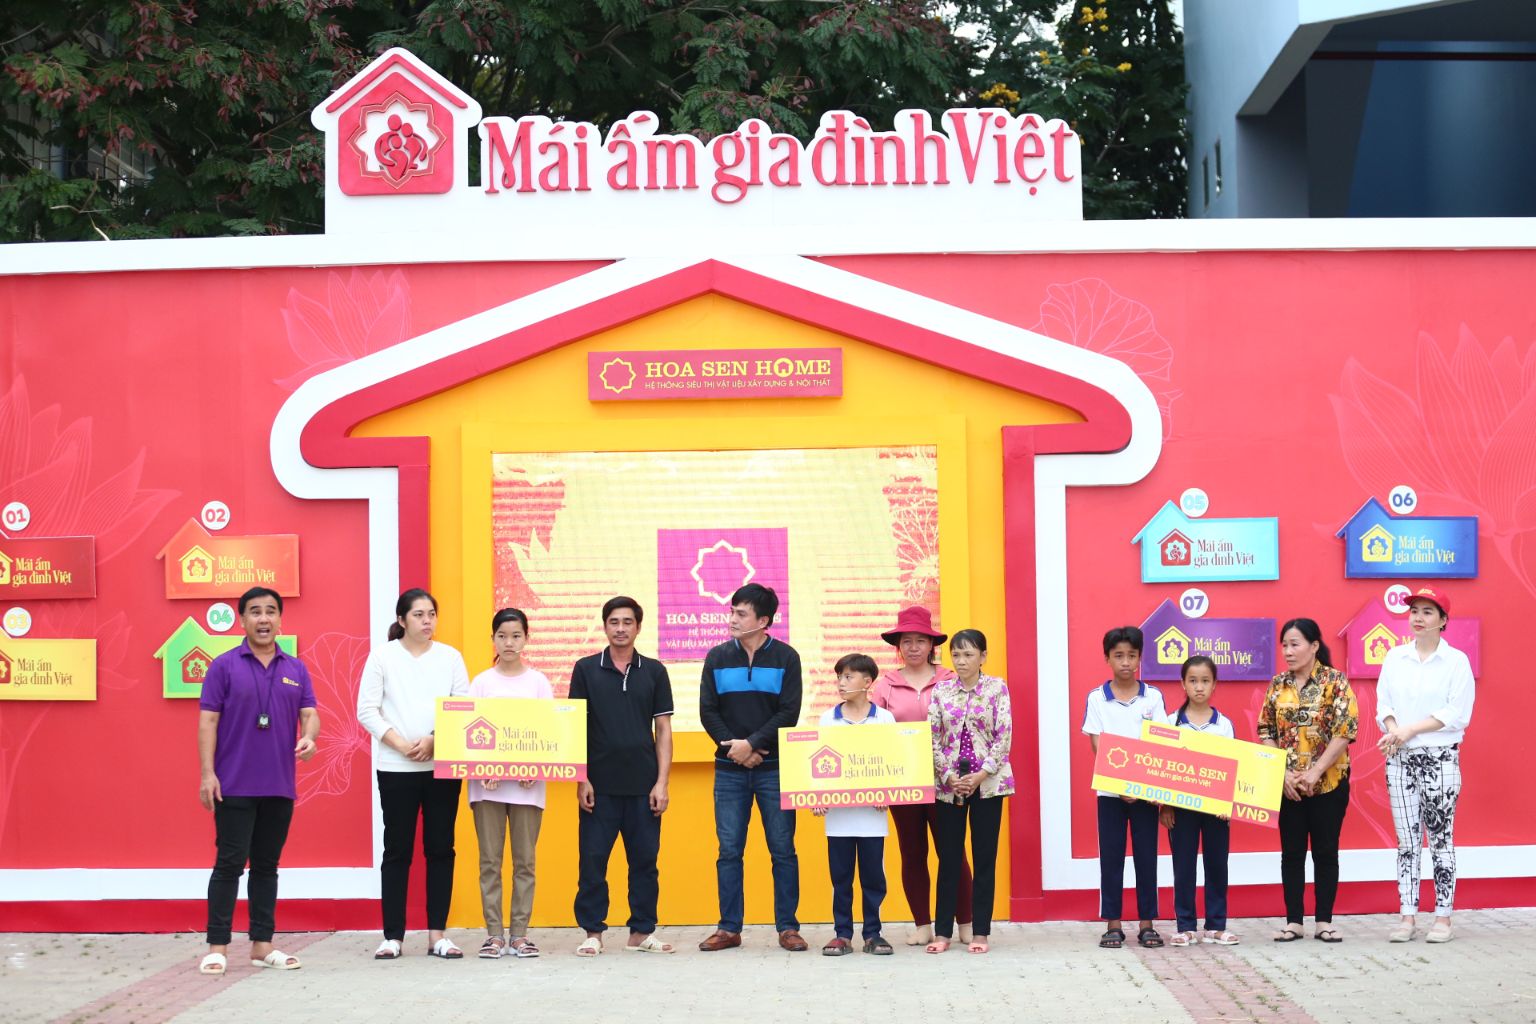 Mái ấm gia đình Việt 3 MC Quyền Linh, Lê Khánh và Cao Minh Đạt mang về 165 triệu đồng giúp các em nhỏ mồ côi